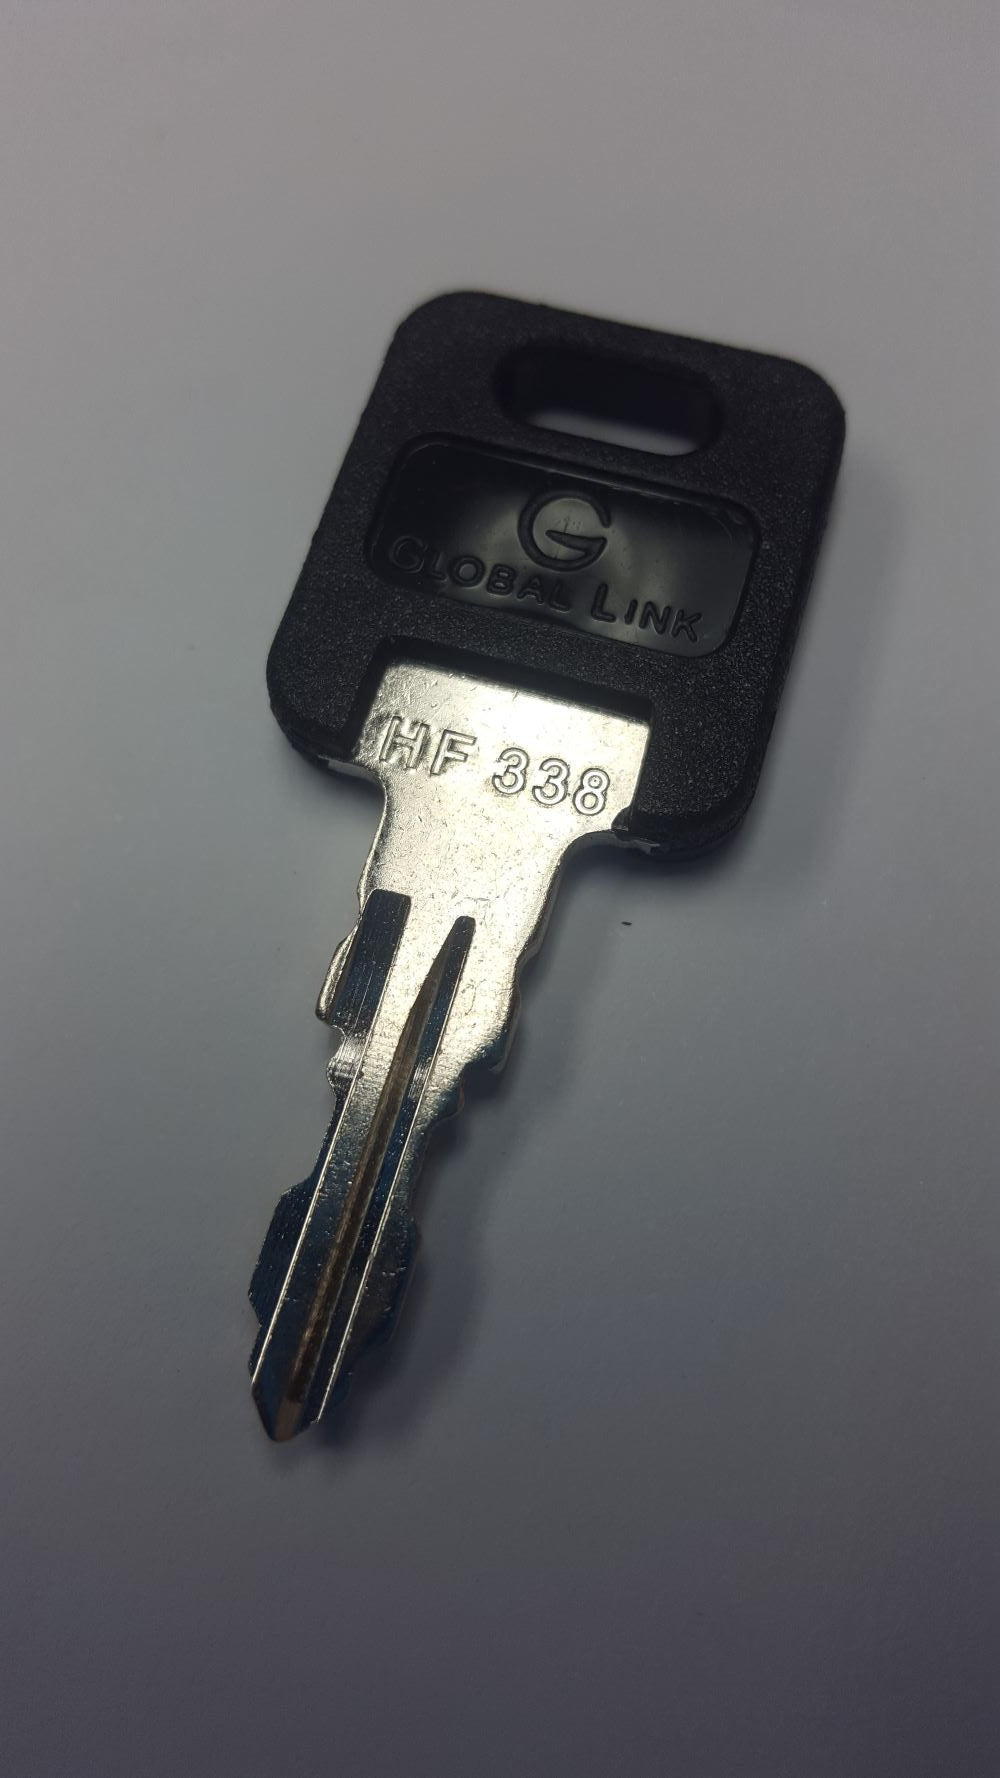 CPG KEY-HF-338 Pre-cut Stamped FIC Replacemnt HF338 Key